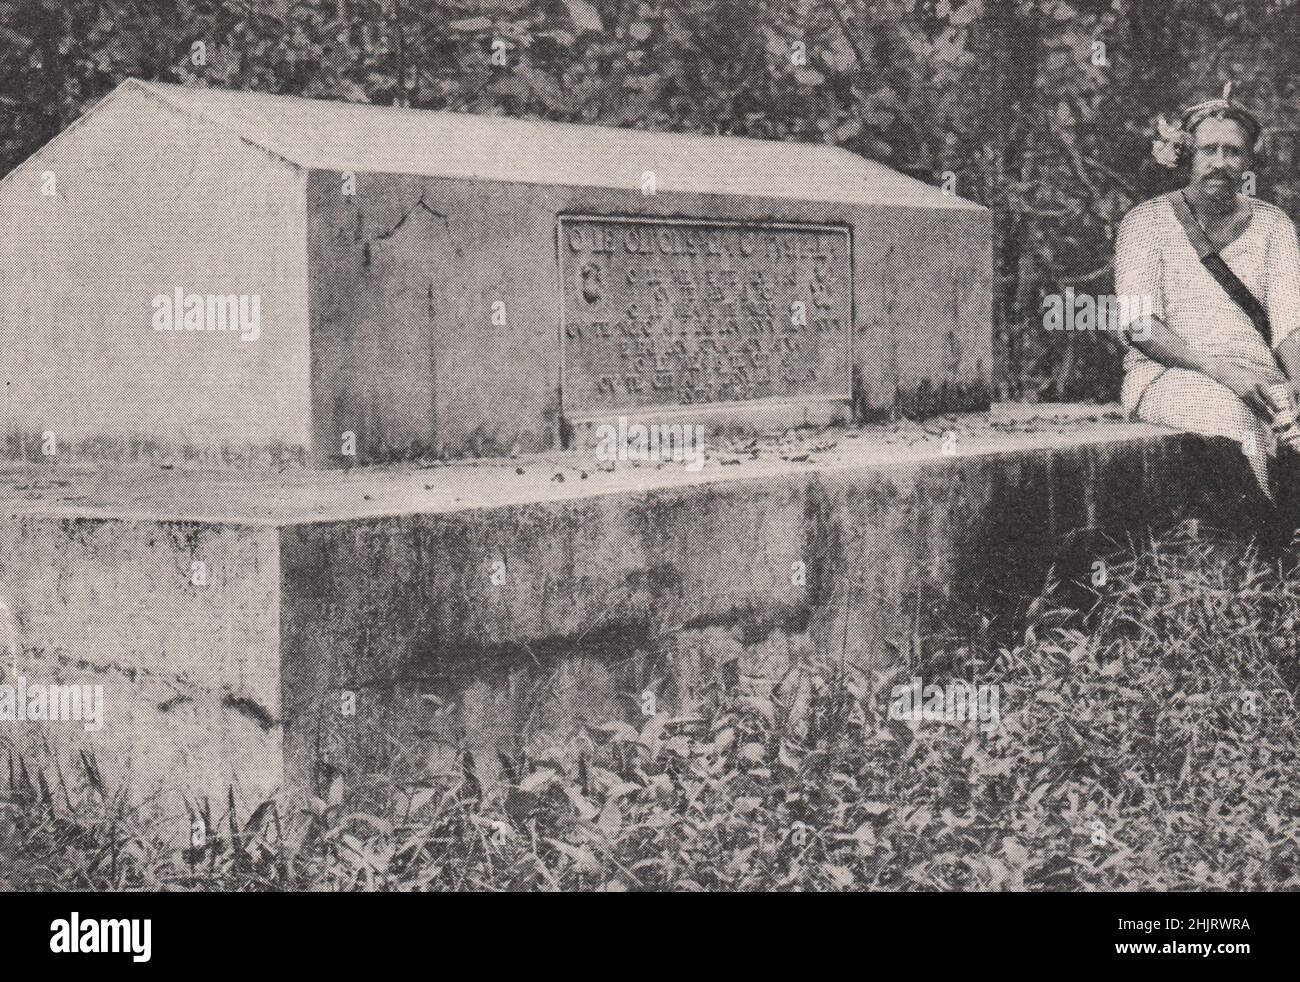 Tomb of Robert Louis Stevenson on Mount Vaea, Upolu. Samoa (1923) Stock Photo